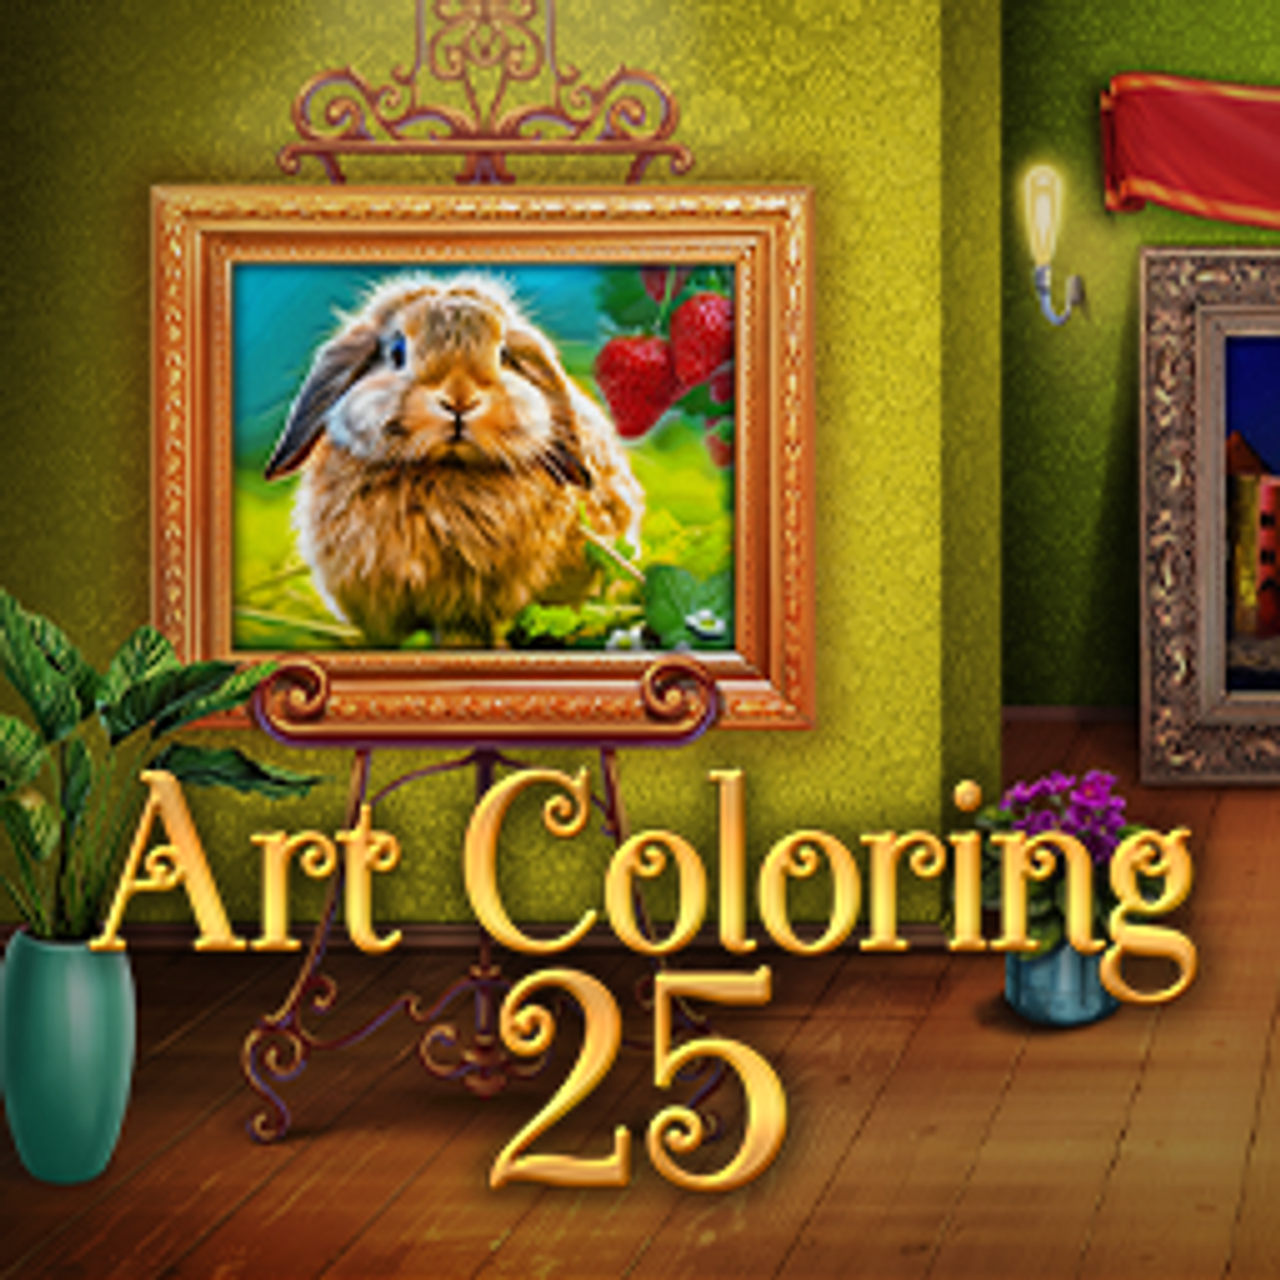 Art Coloring 25